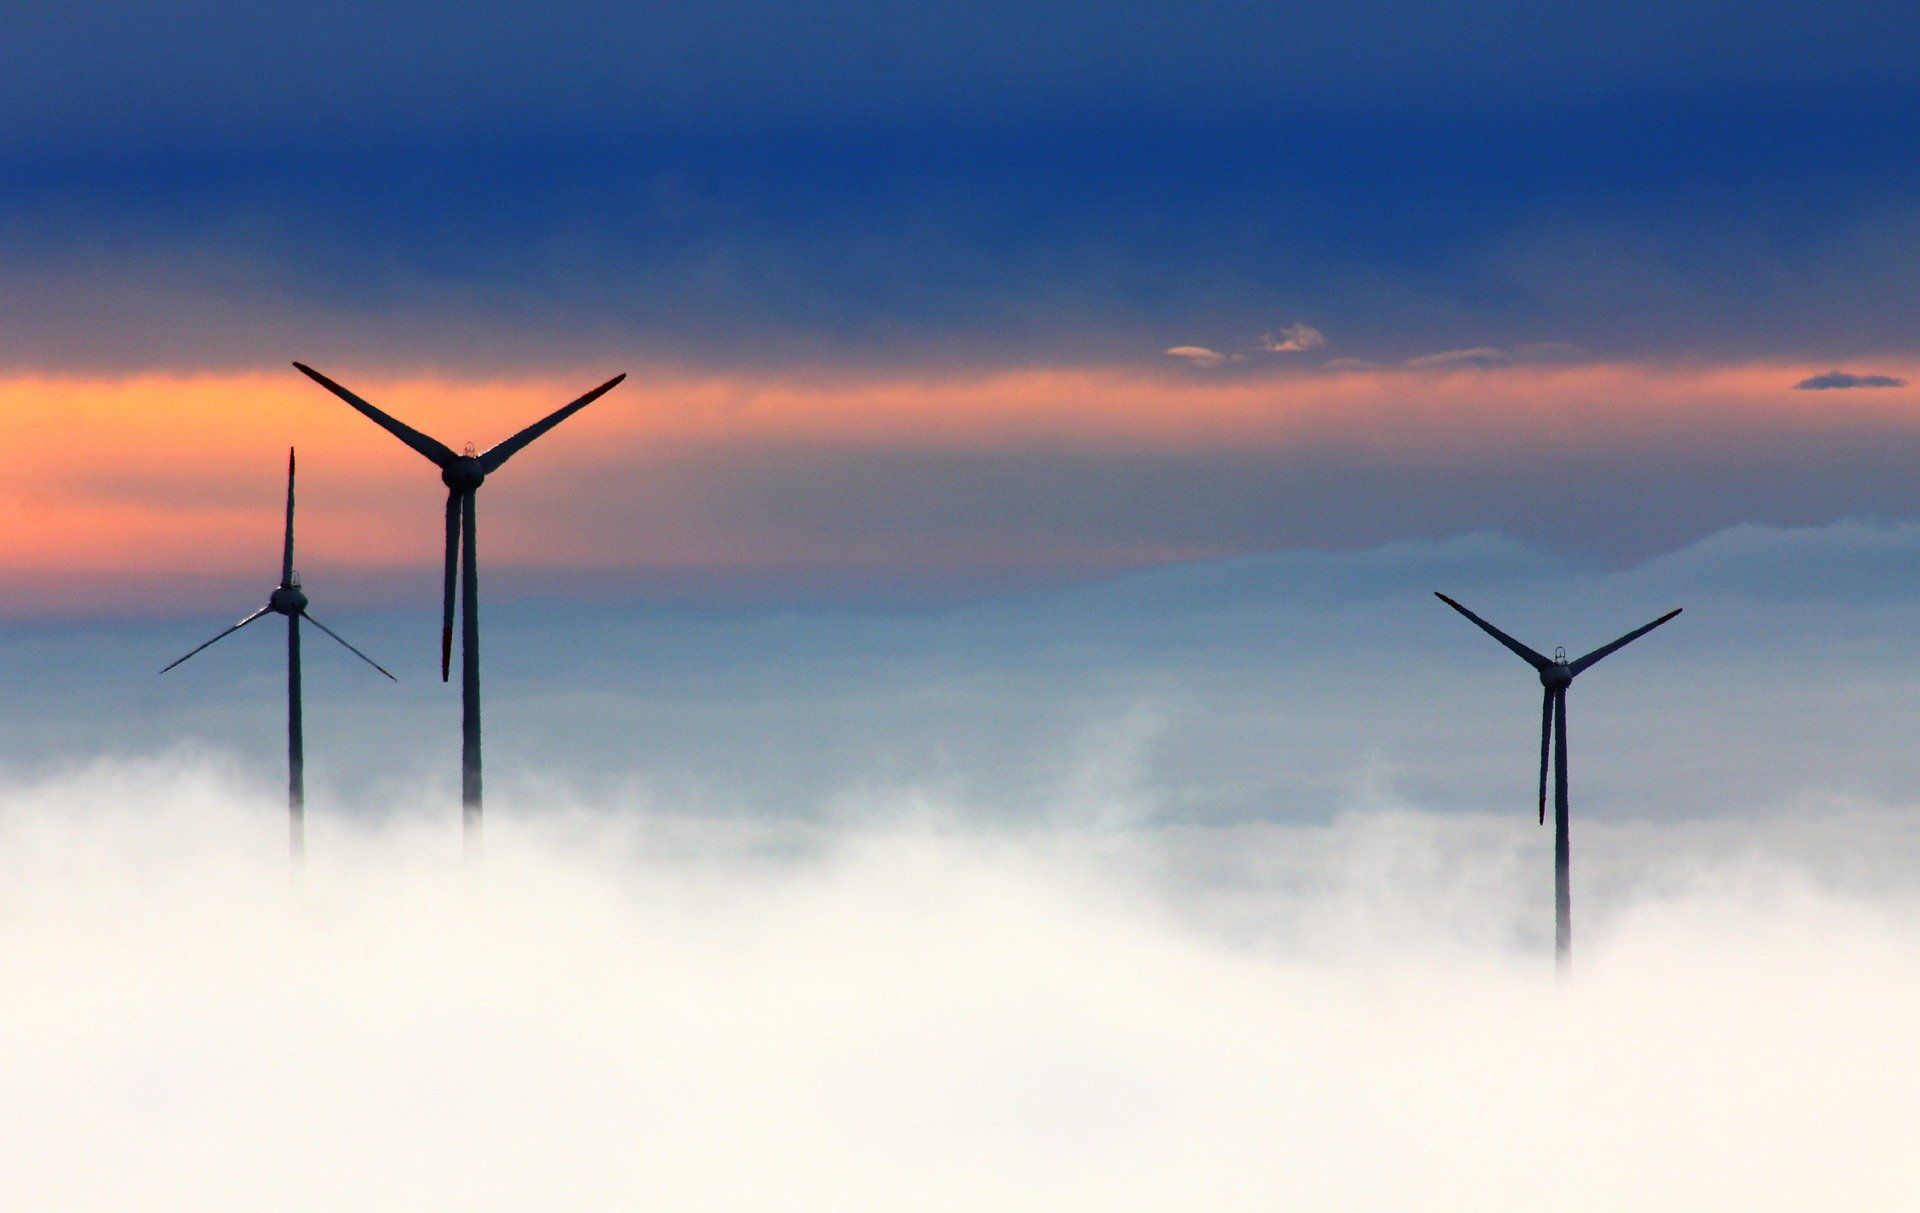 Molinos de viento bajo la niebla.  Fondos de recuperación de la UE Next Generation / Foto: Oim Heidi - Pixabay